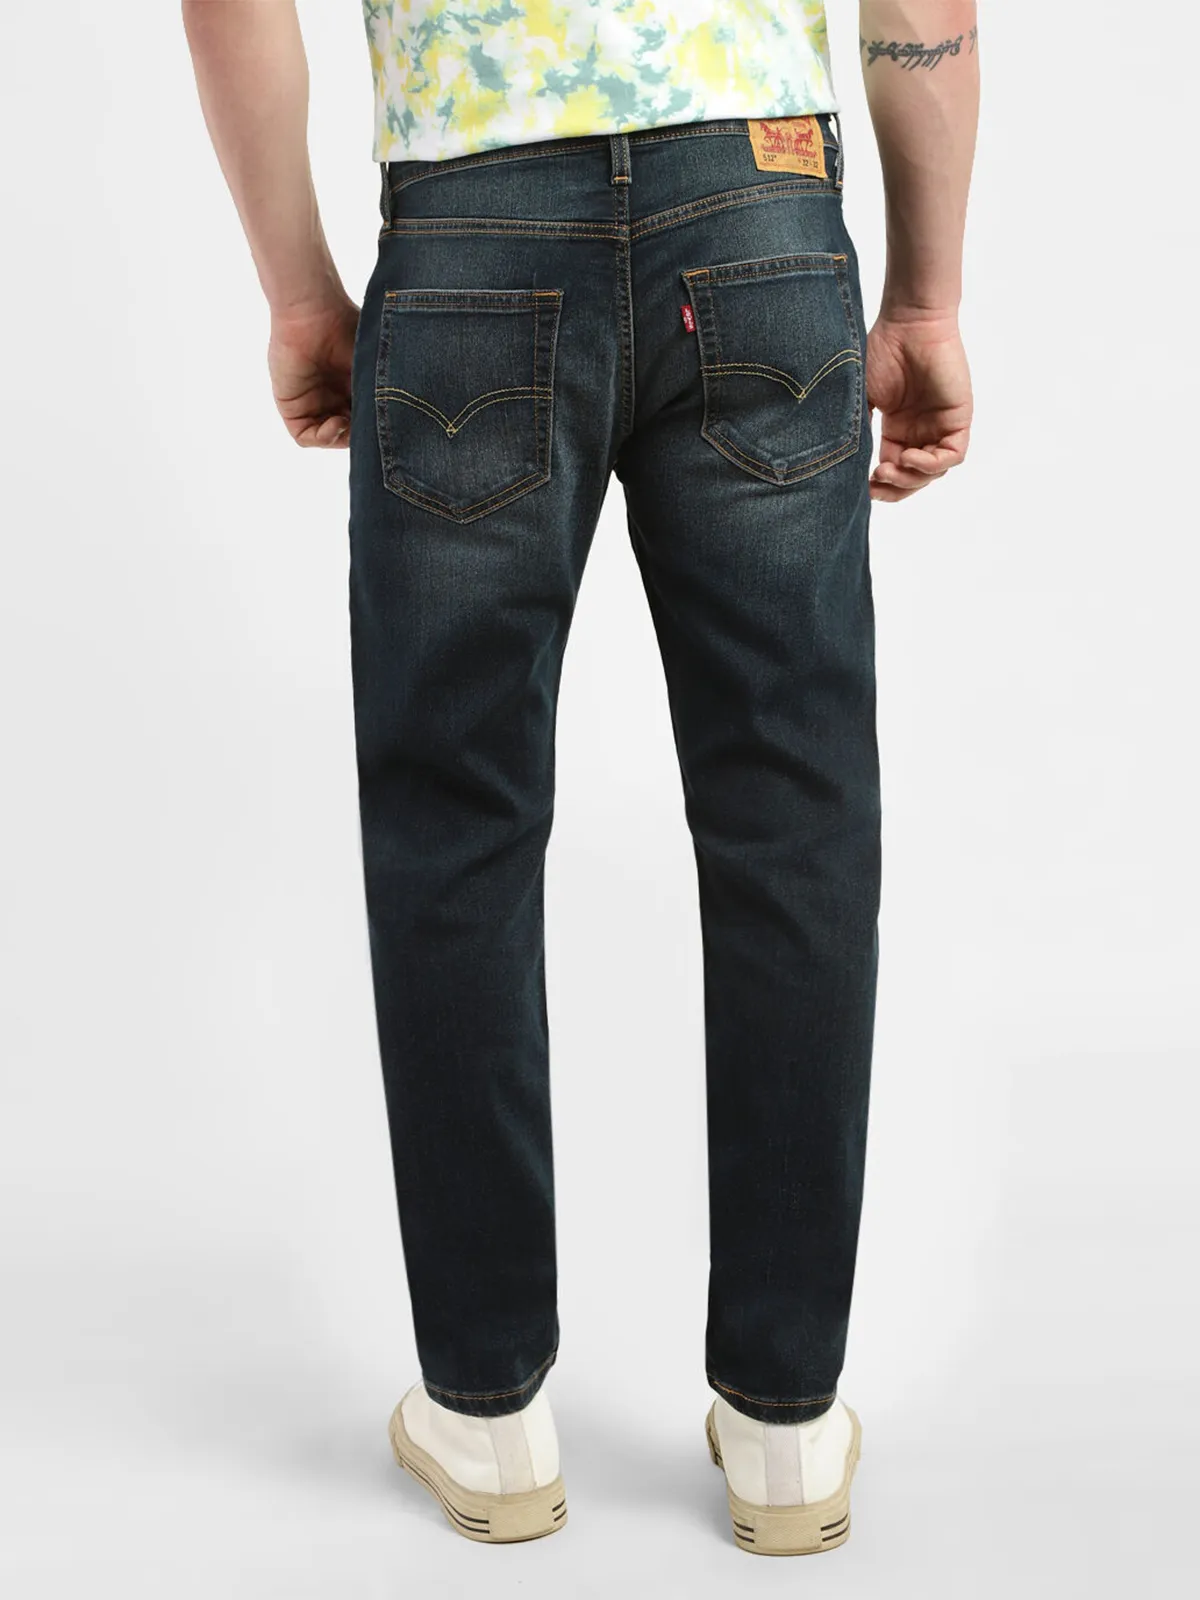 Levis black washed 512 slim taper jeans